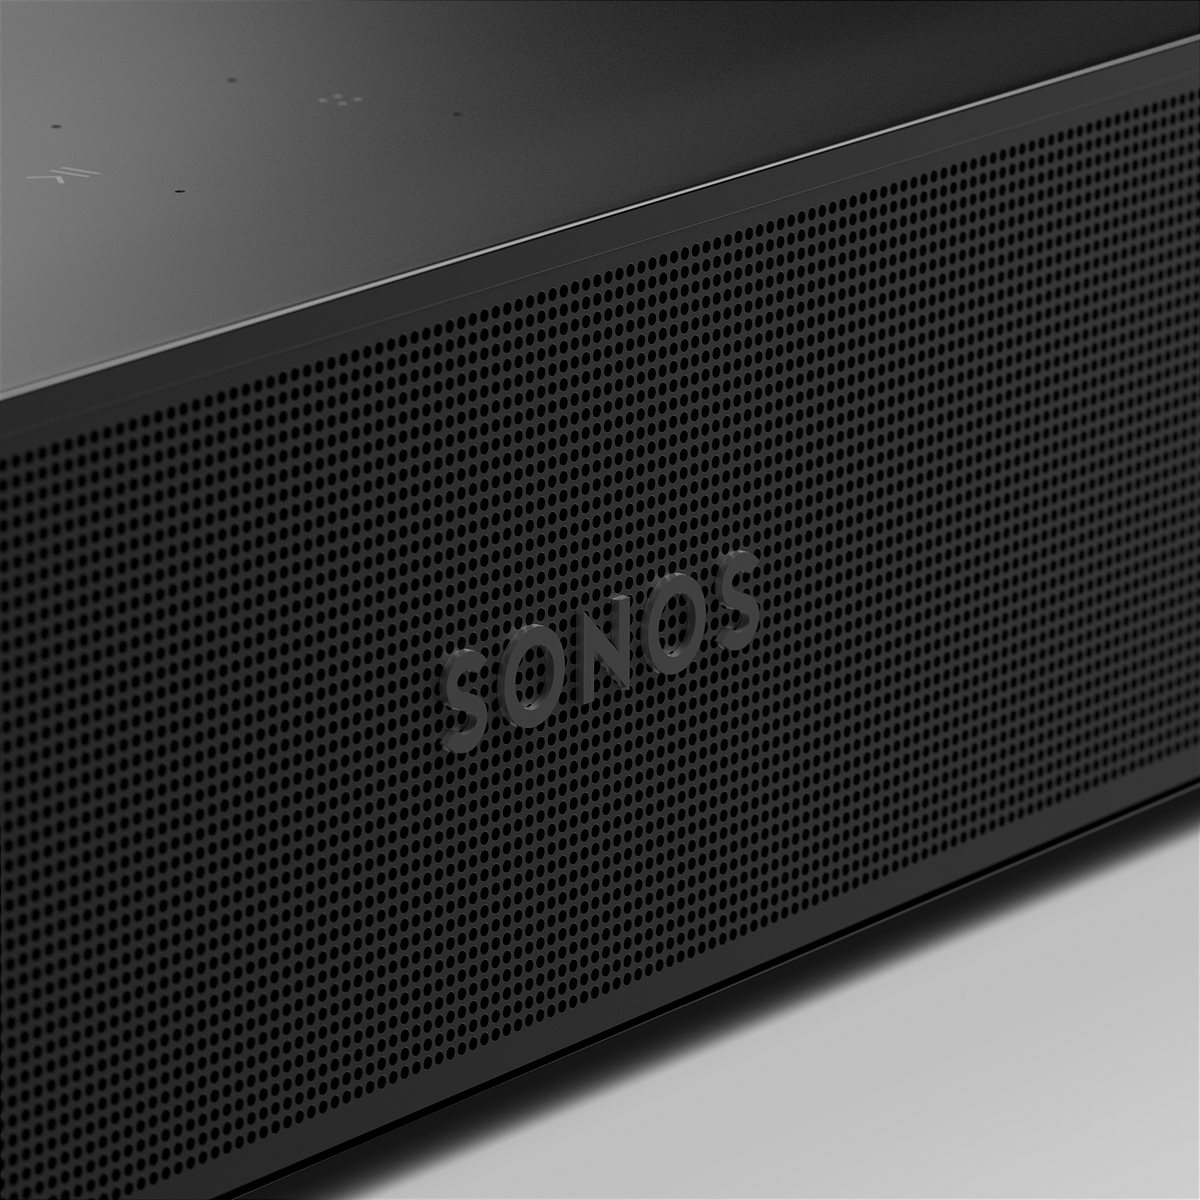 Sonos Beam (Gen2)